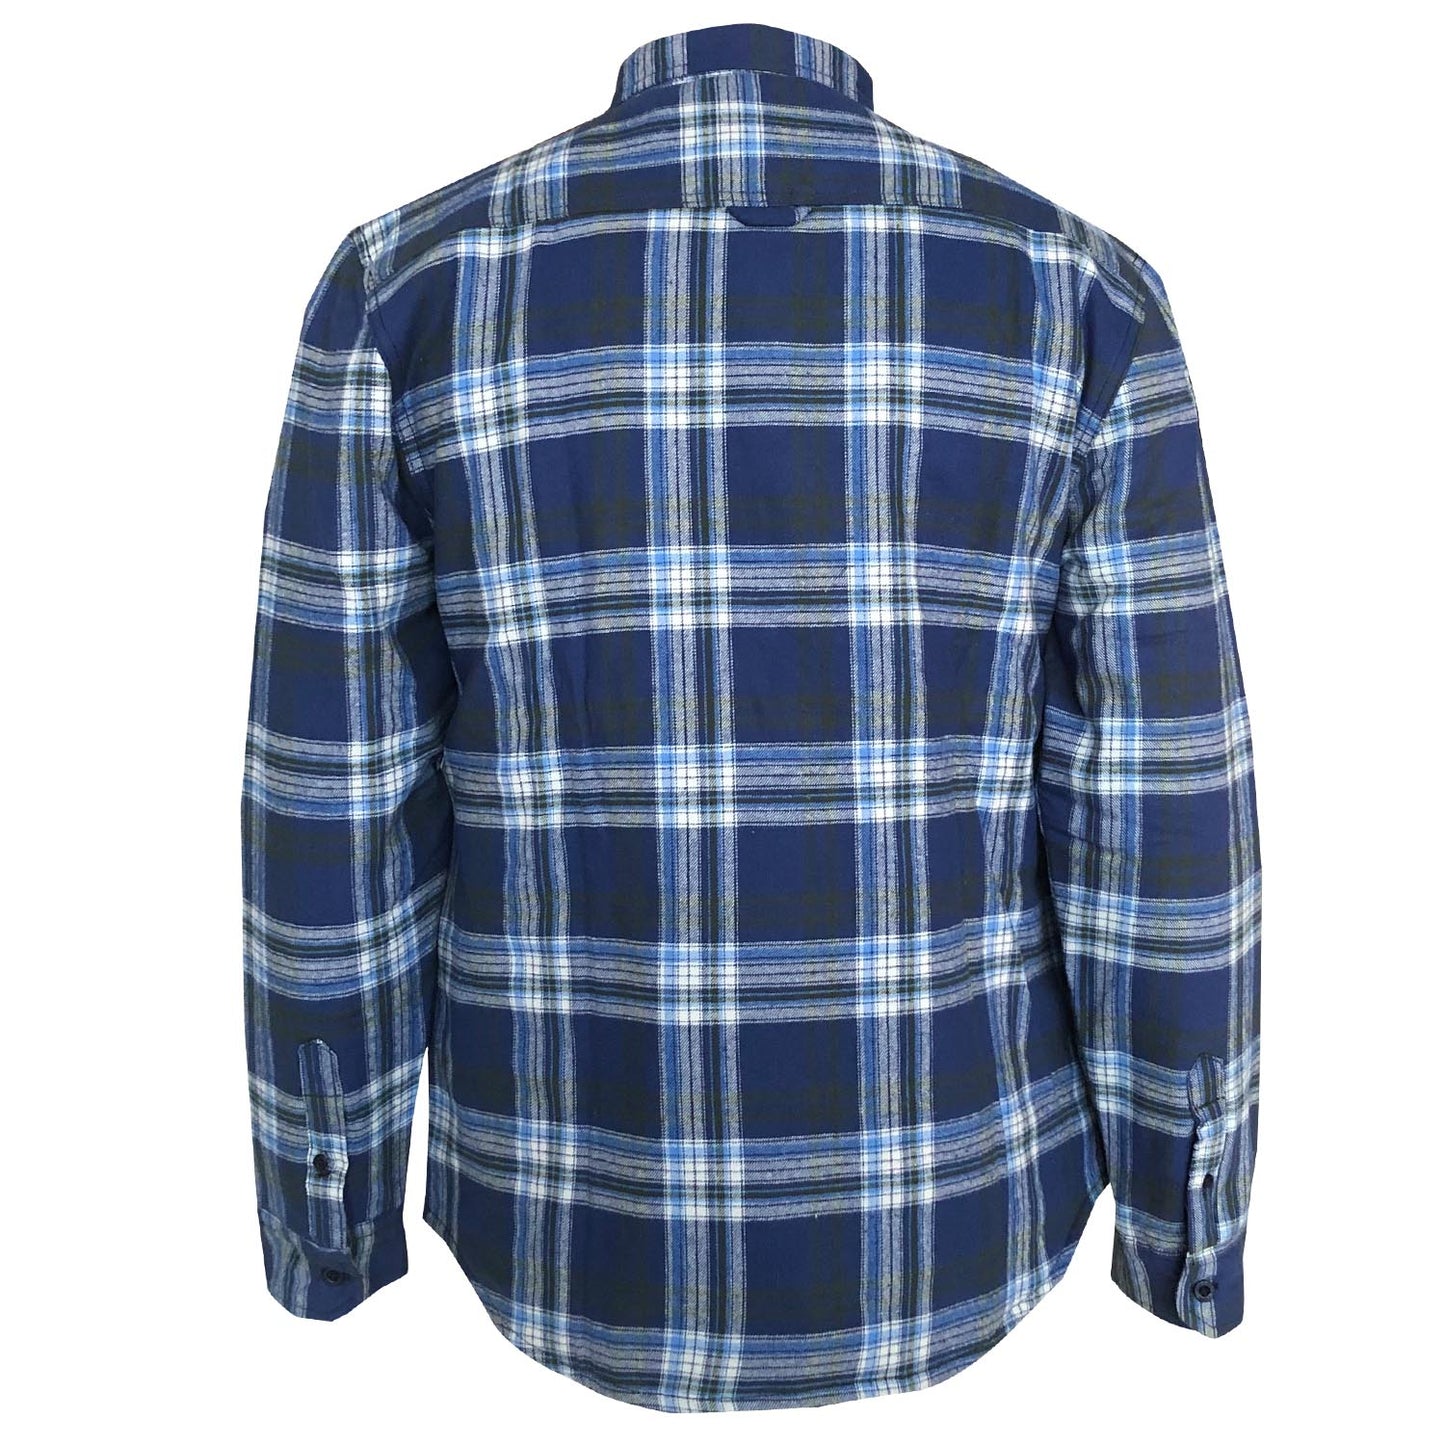 Drift King - Quilted Long Sleeve Shirt AW19 - LabelledUp.com